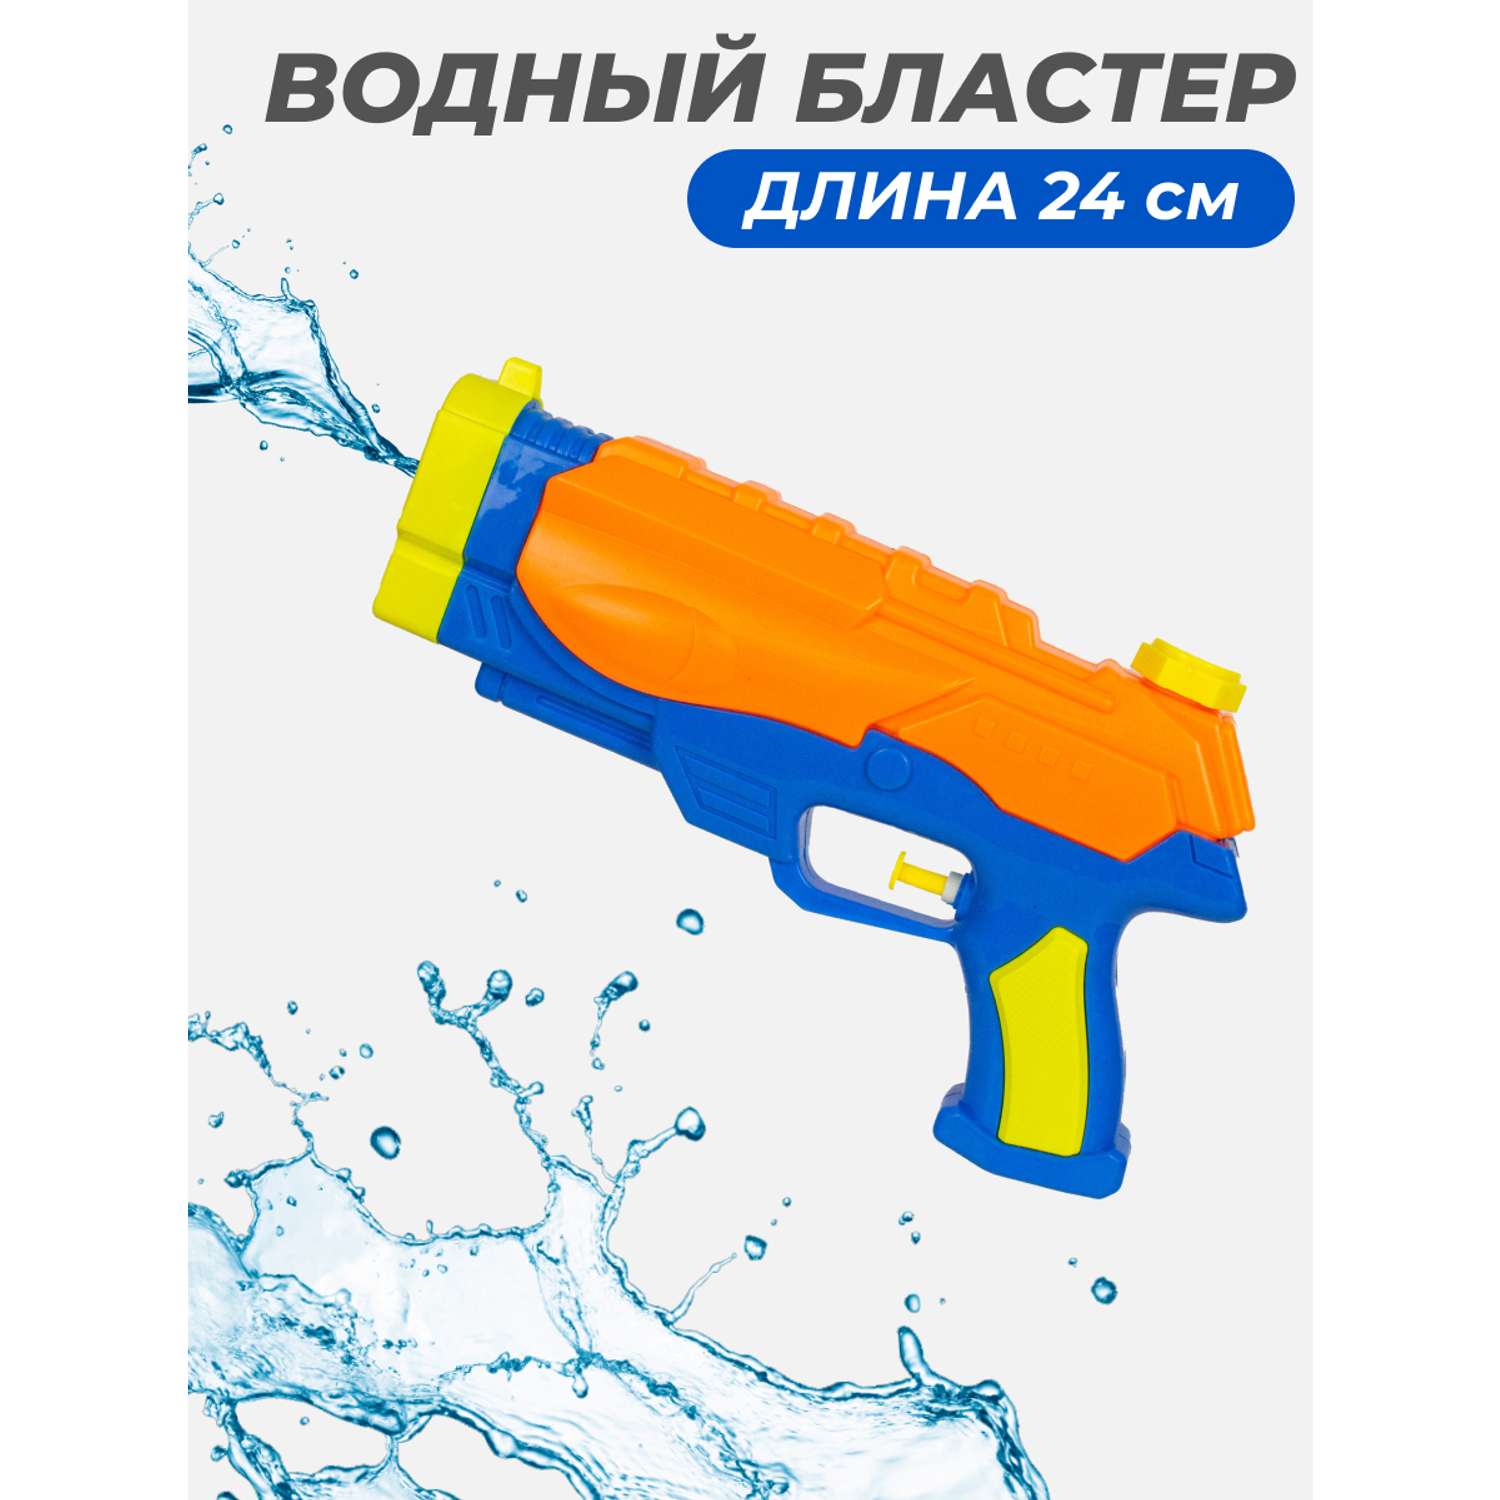 Водный бластер Story Game 530 оранжевый - фото 1